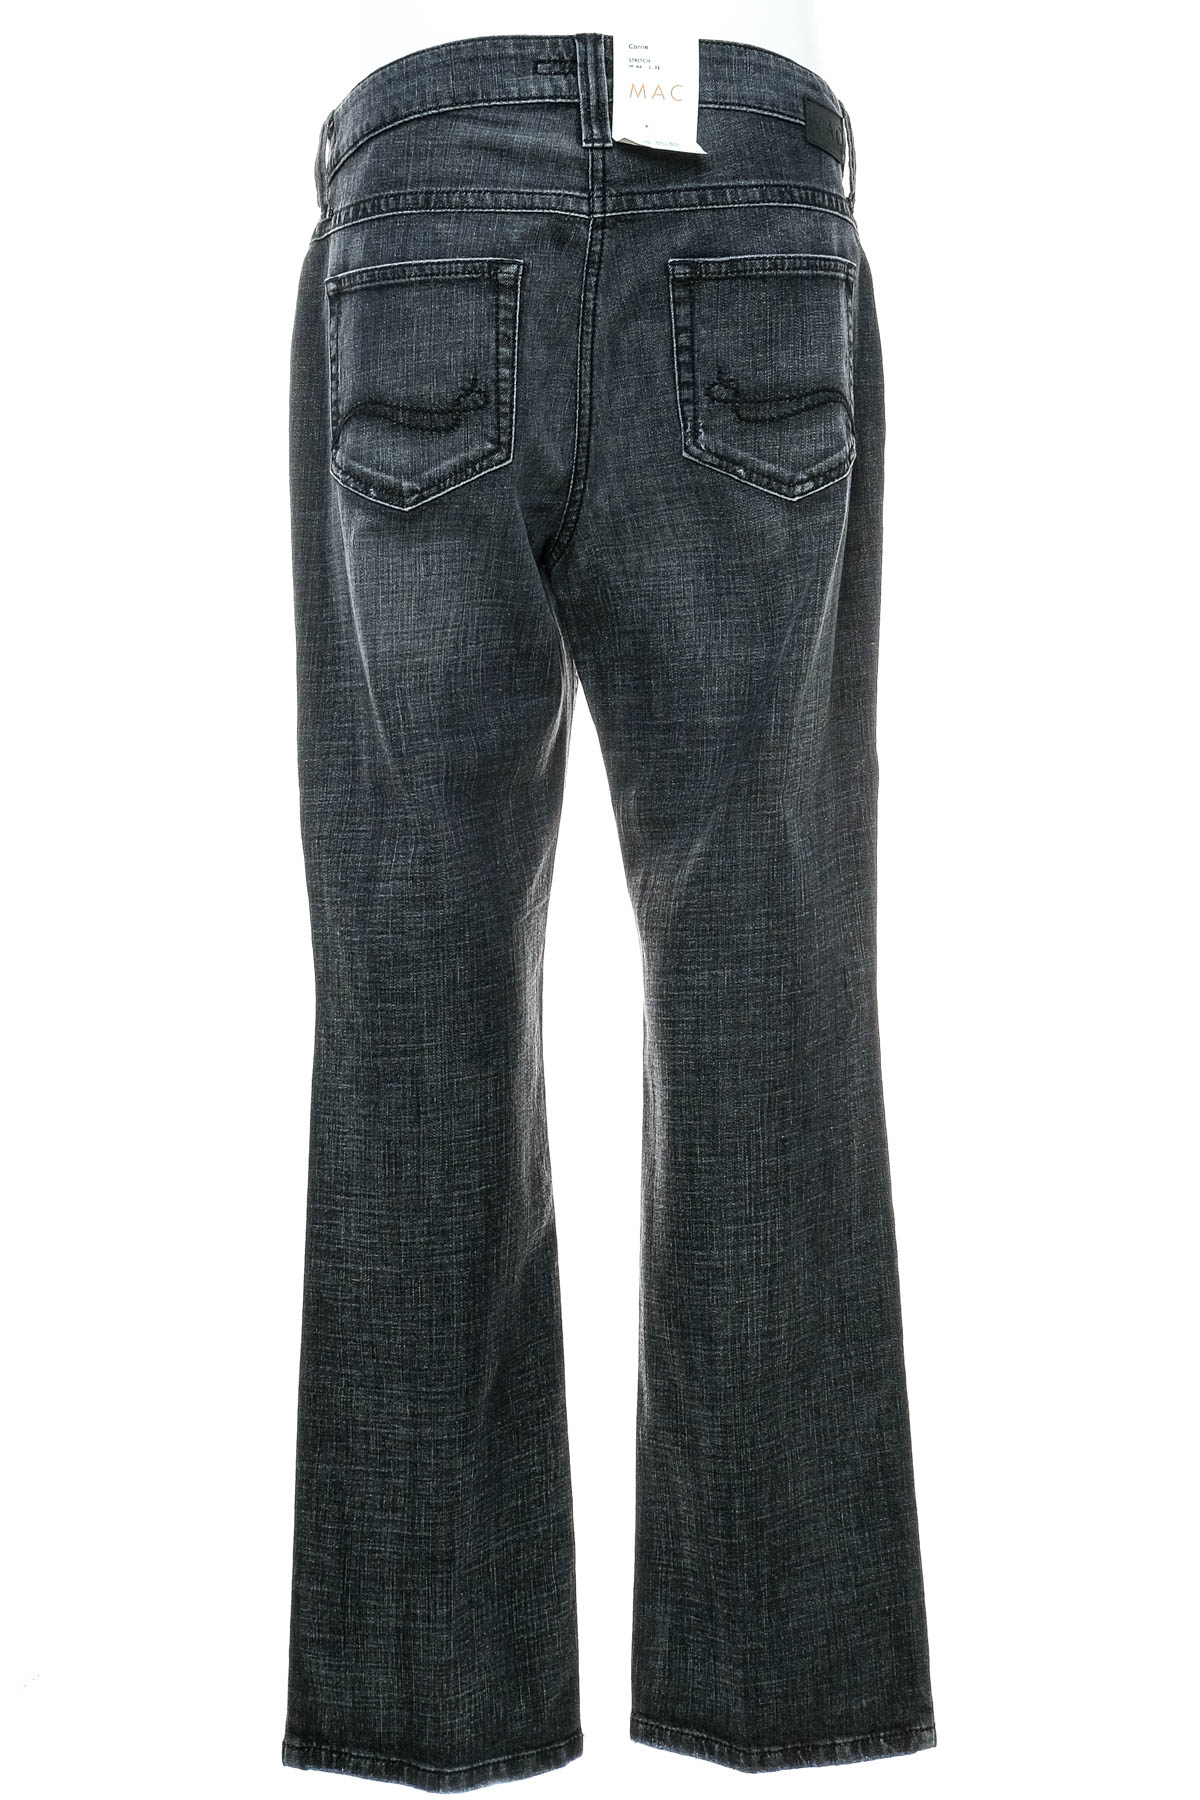 Jeans pentru bărbăți - MAC - 1